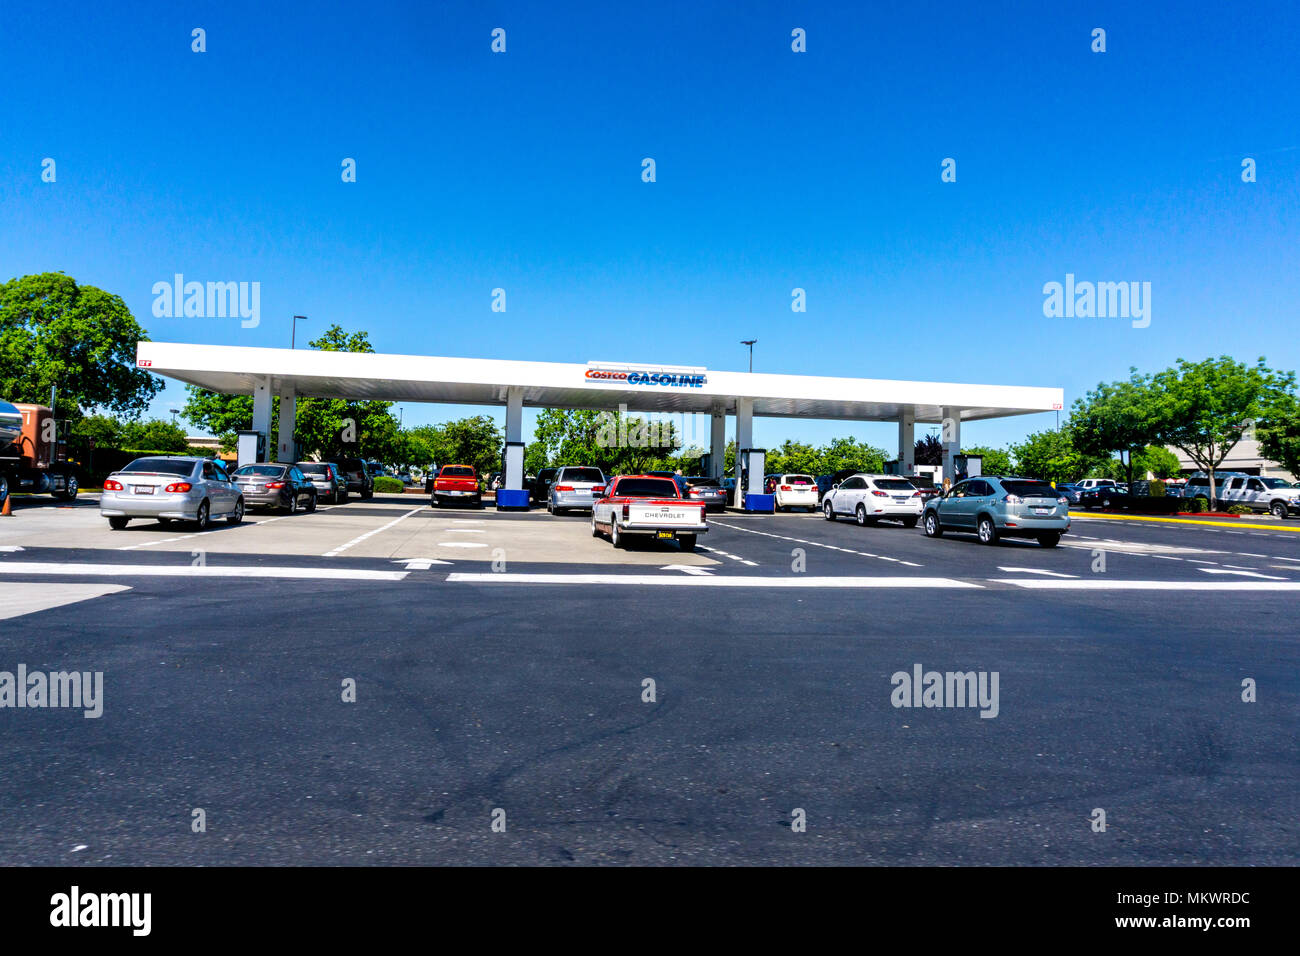 The Costco Gas Station in Modesto California USA Stock Photo